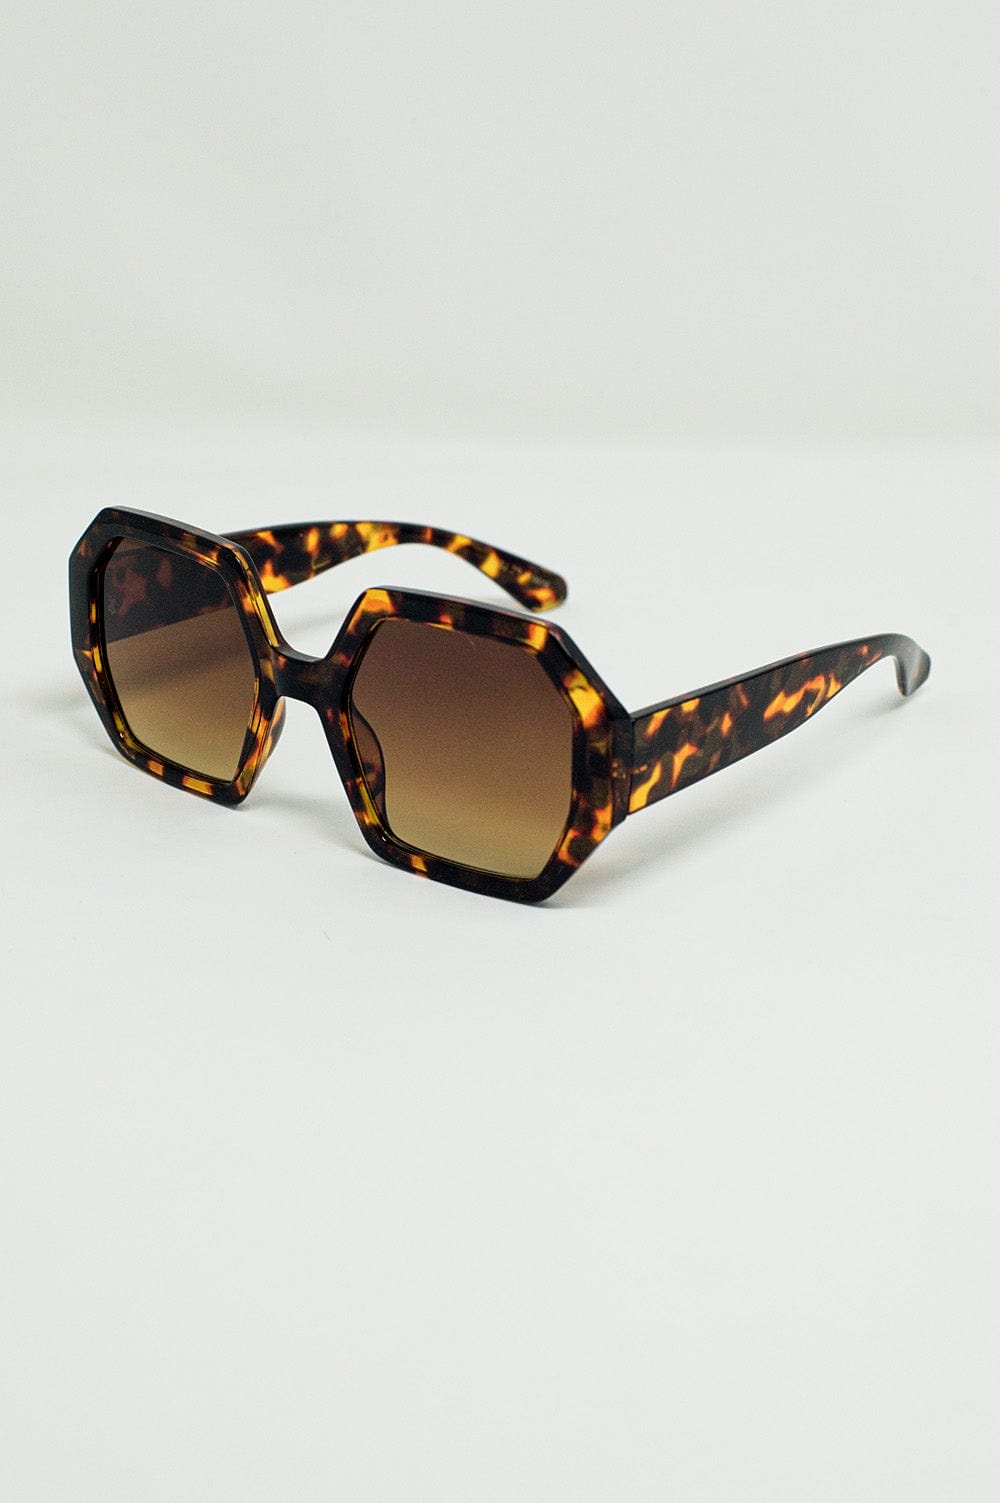 Q2 Women's Sunglasses One Size / Brown Hexagonal Oversized Sunglasses In Dark Tortoiseshell